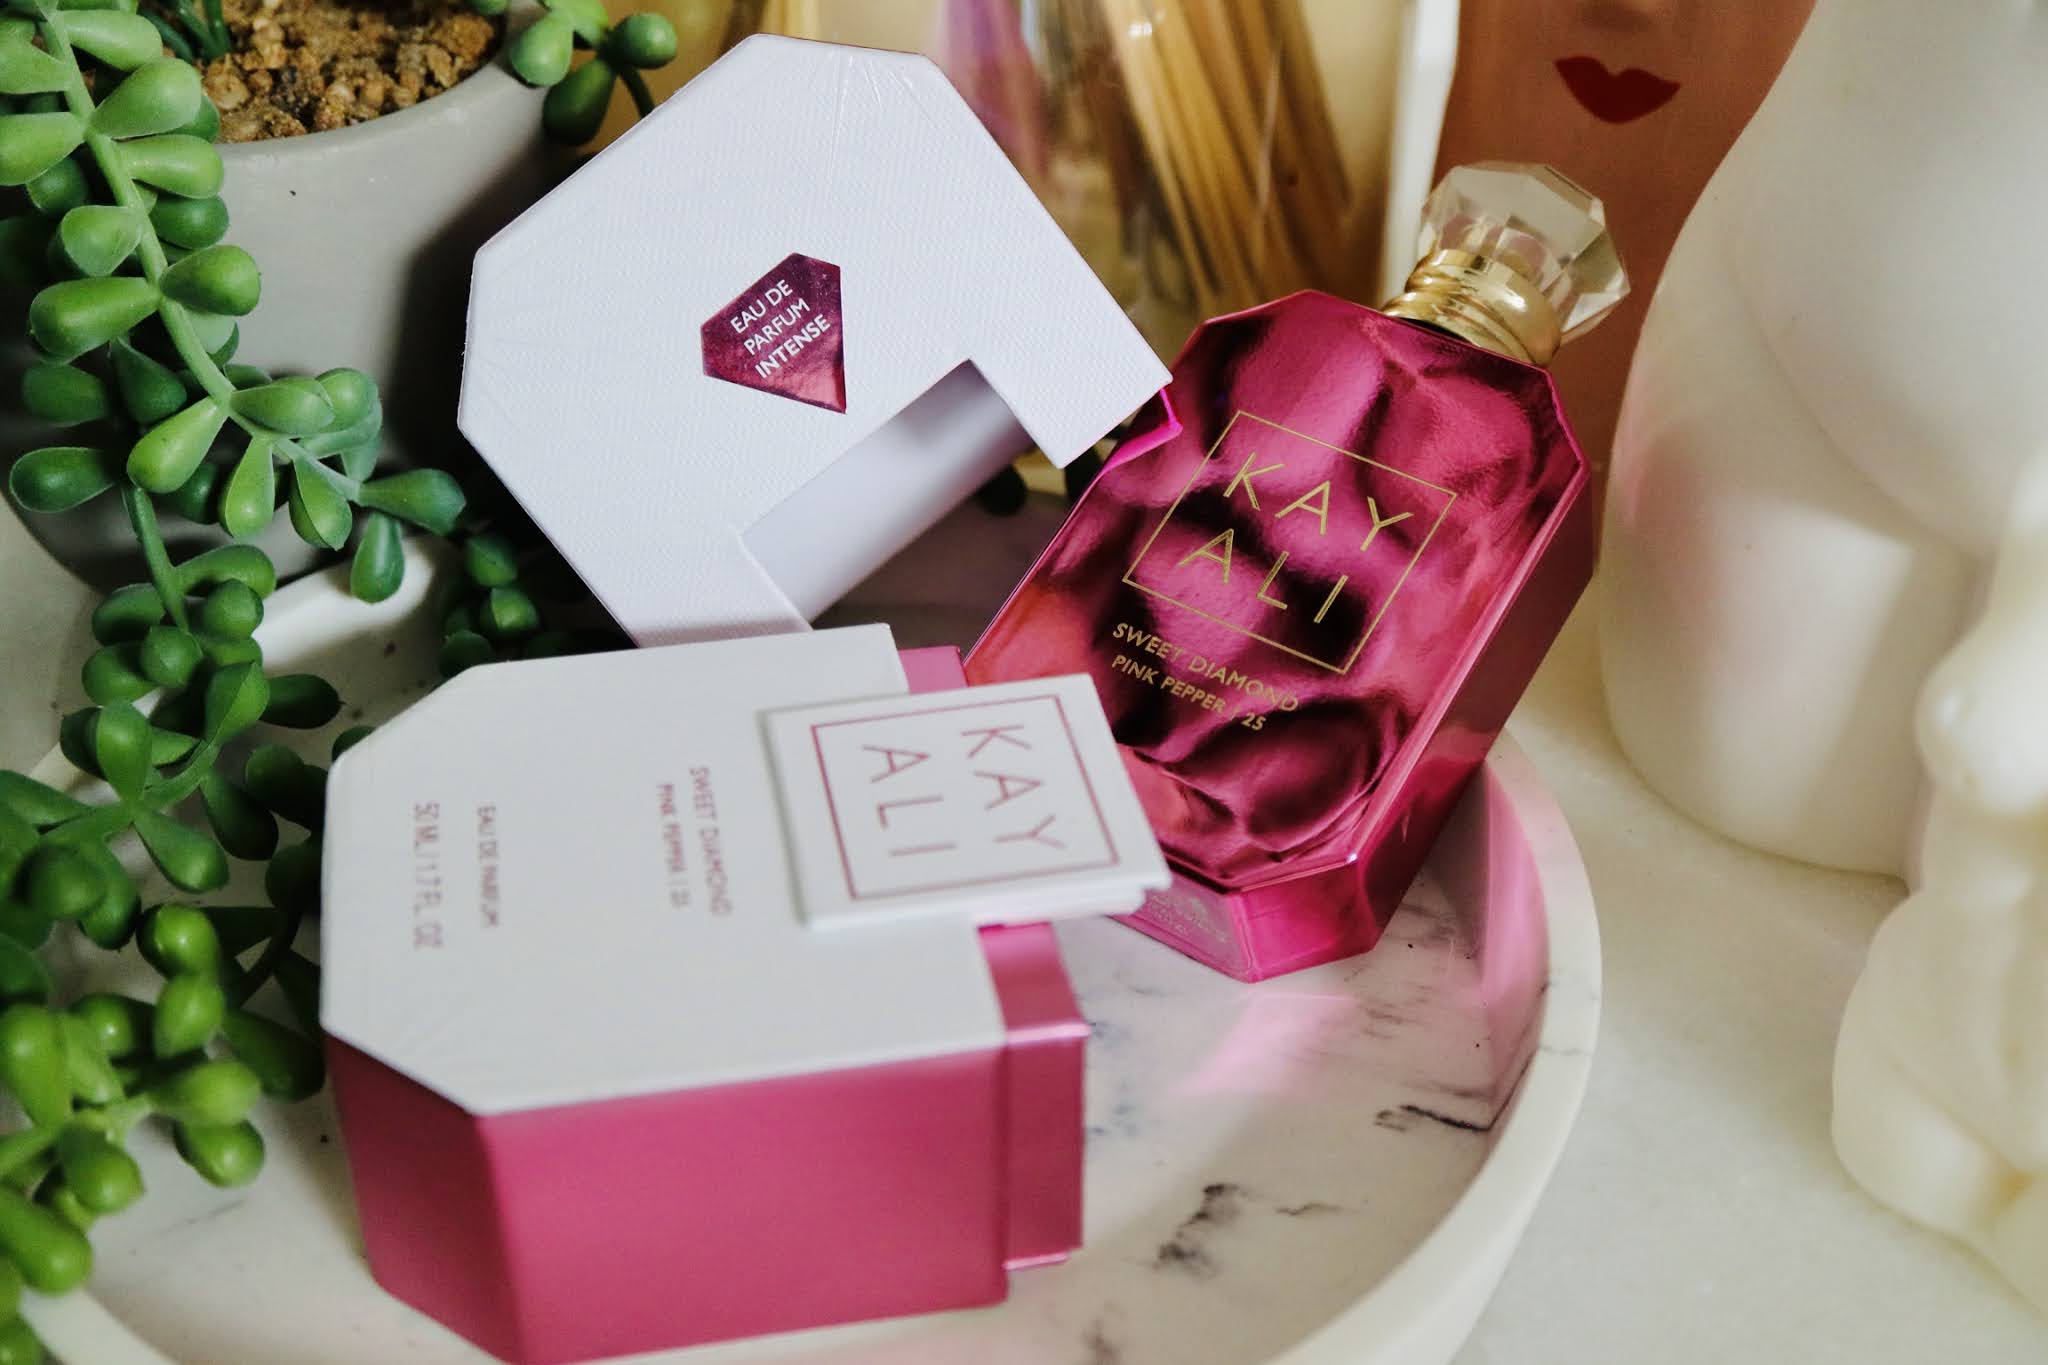 CHANEL POUR MONSIEUR Eau de Toilette Perfume Unboxing and Fragrance Review  